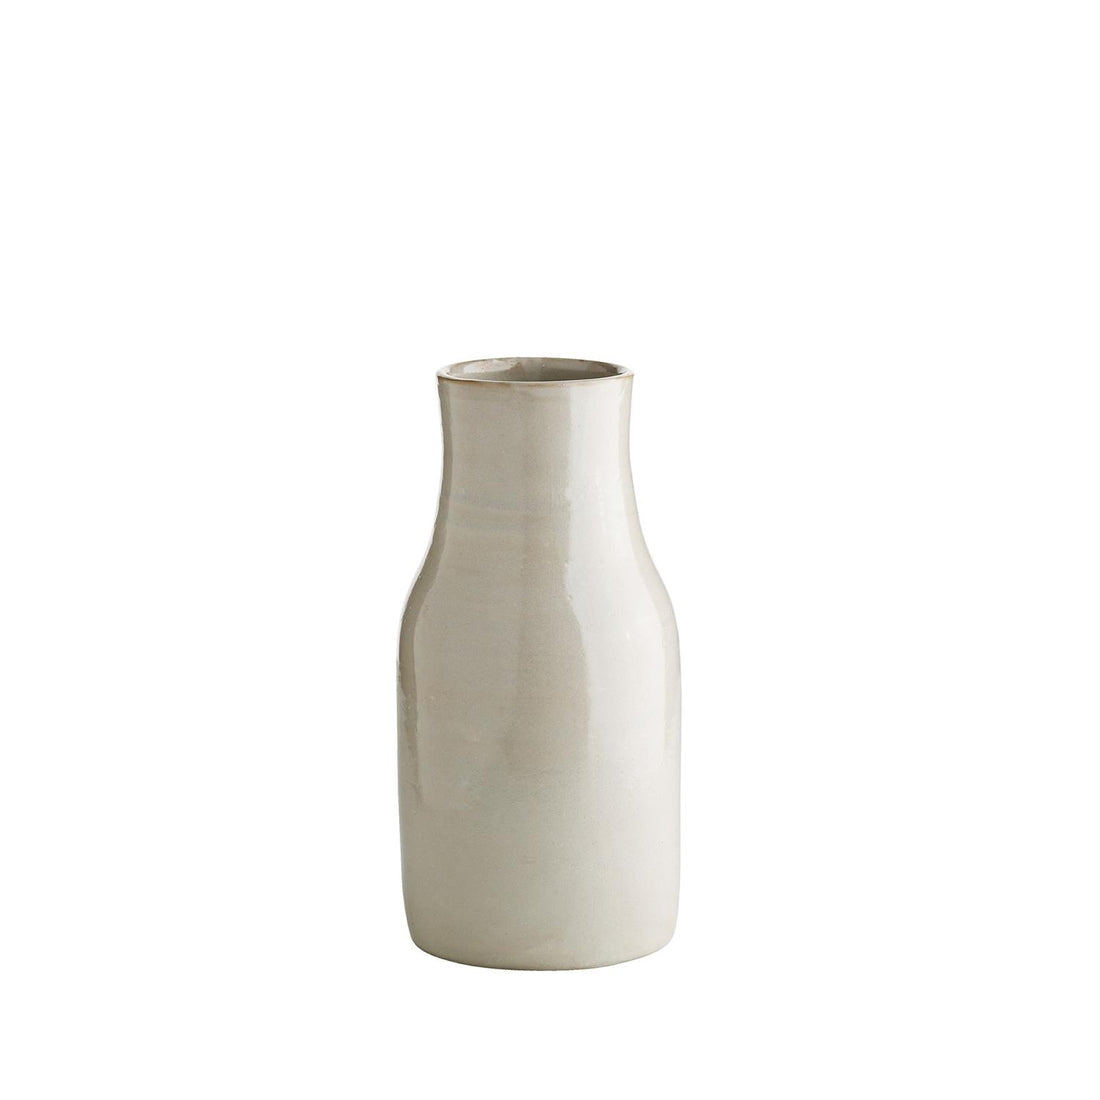 Moroccoan vase  - flaske form